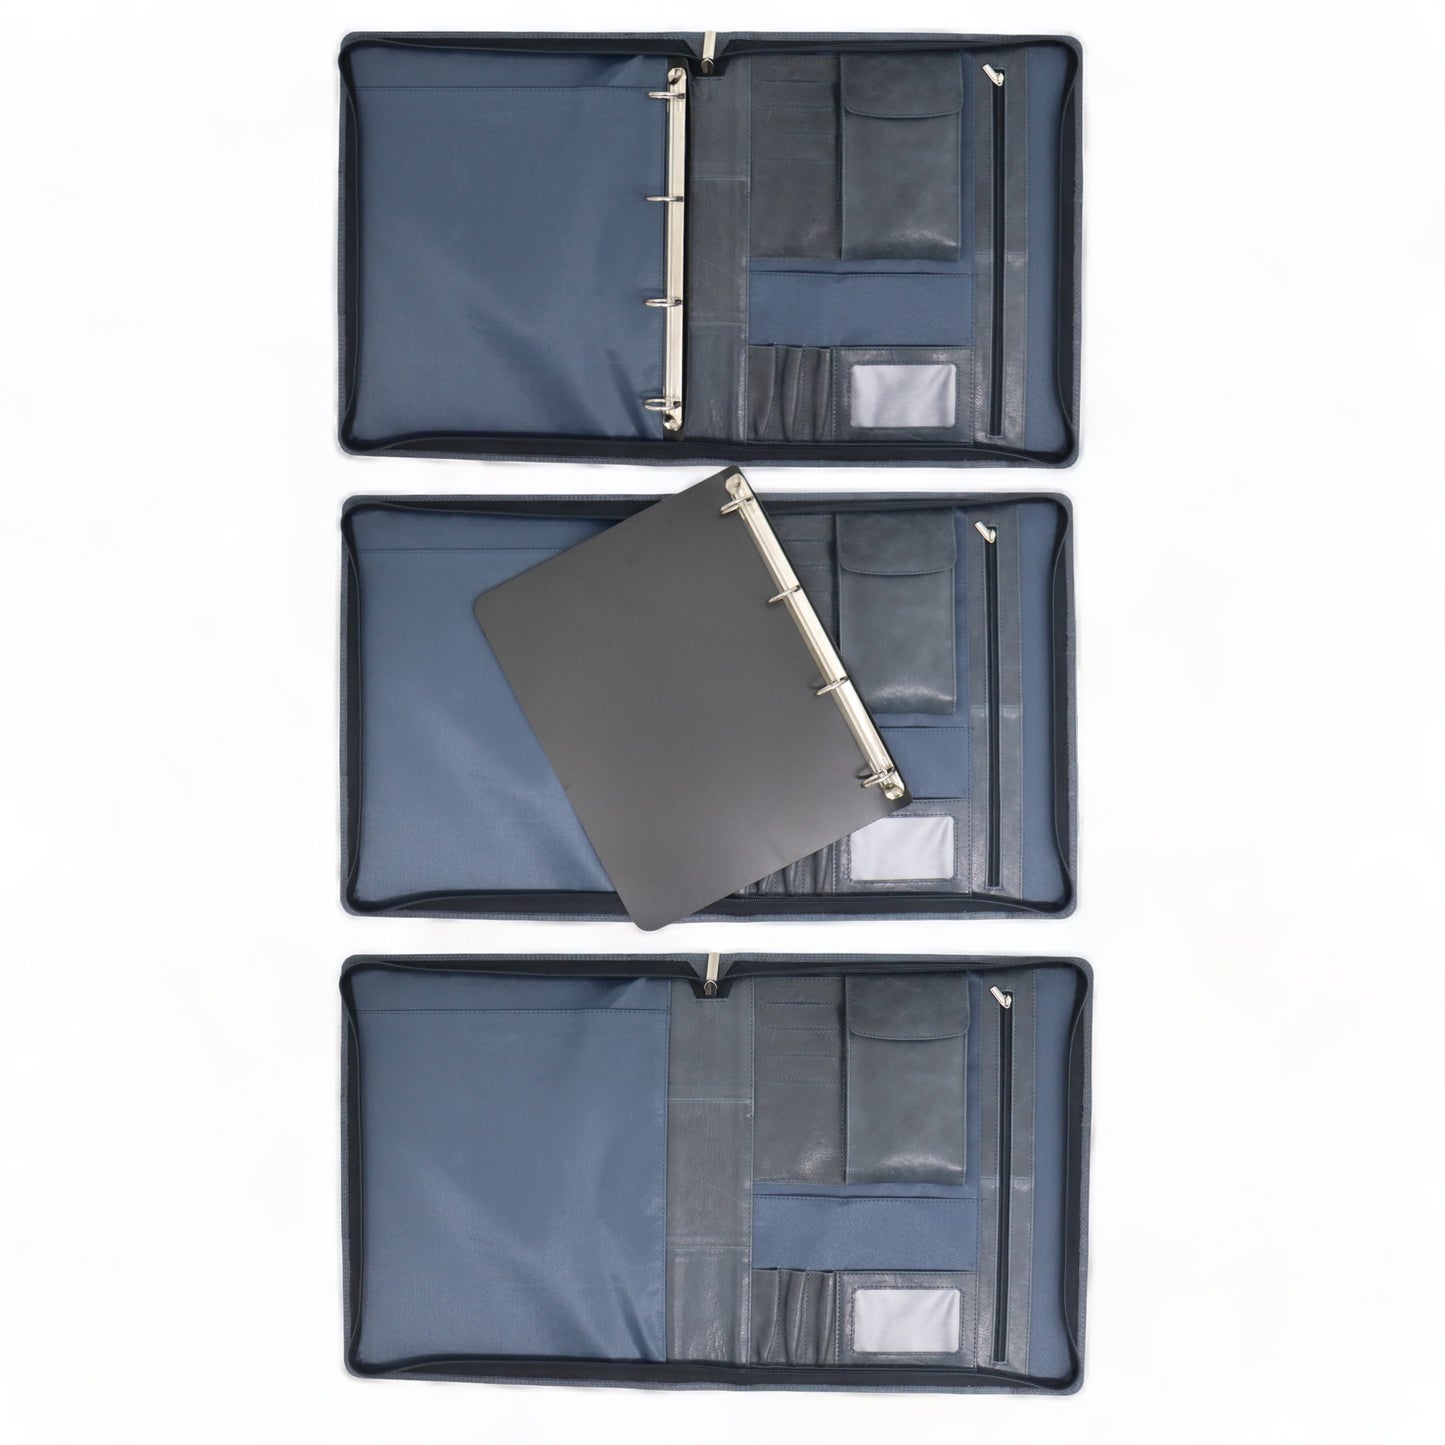 Porte-documents gaucher A4 - Porte-document gaucher - Gaucher - Porte-documents de conférence A4 - Porte-documents en cuir - Bleu